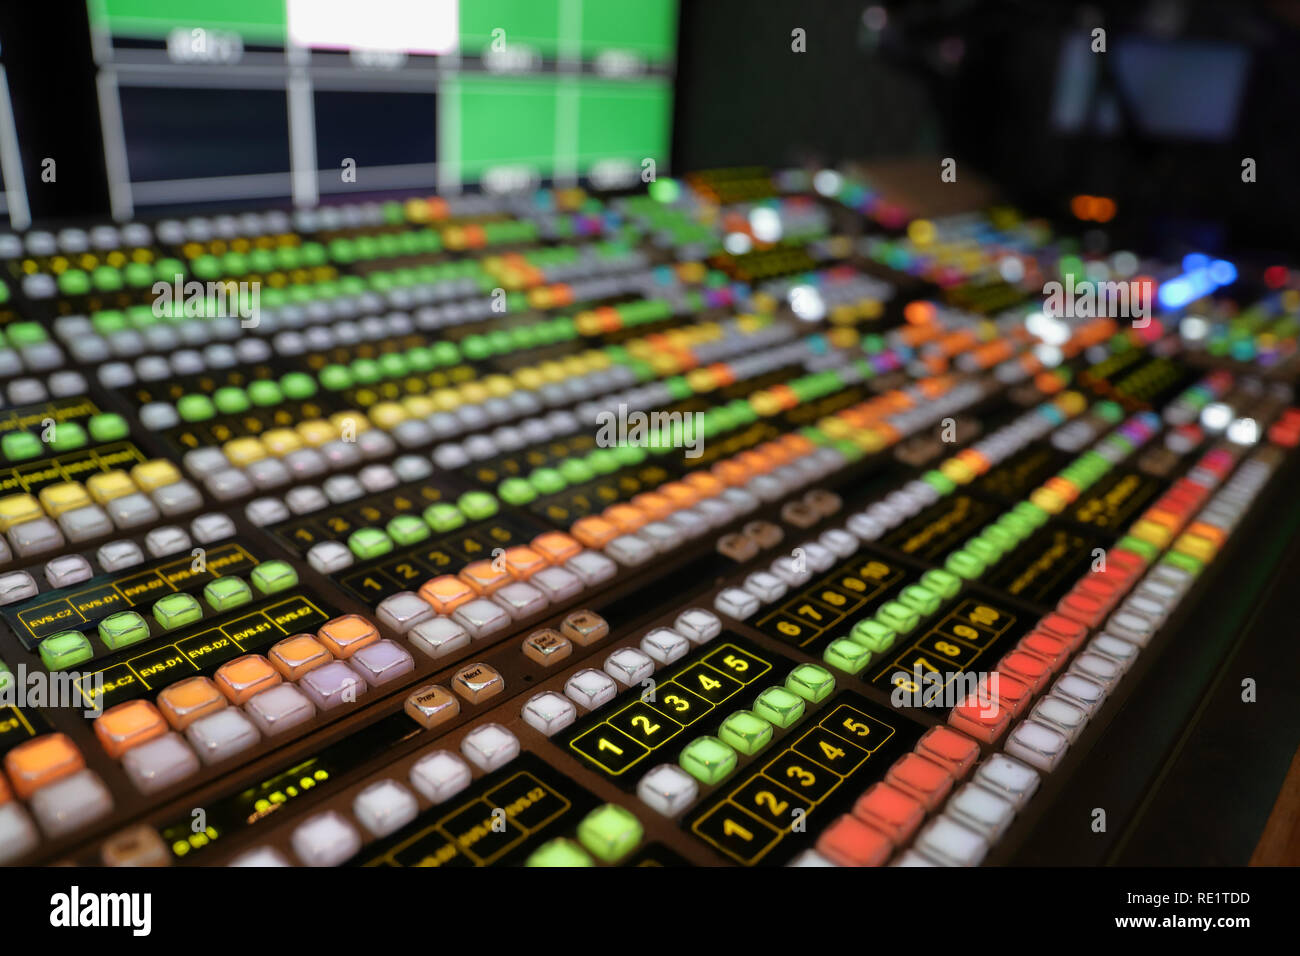 Broadcast Video Switcher für Live-events und Fernsehen Produktion verwendet, mit bunten Leds und Tasten Stockfoto